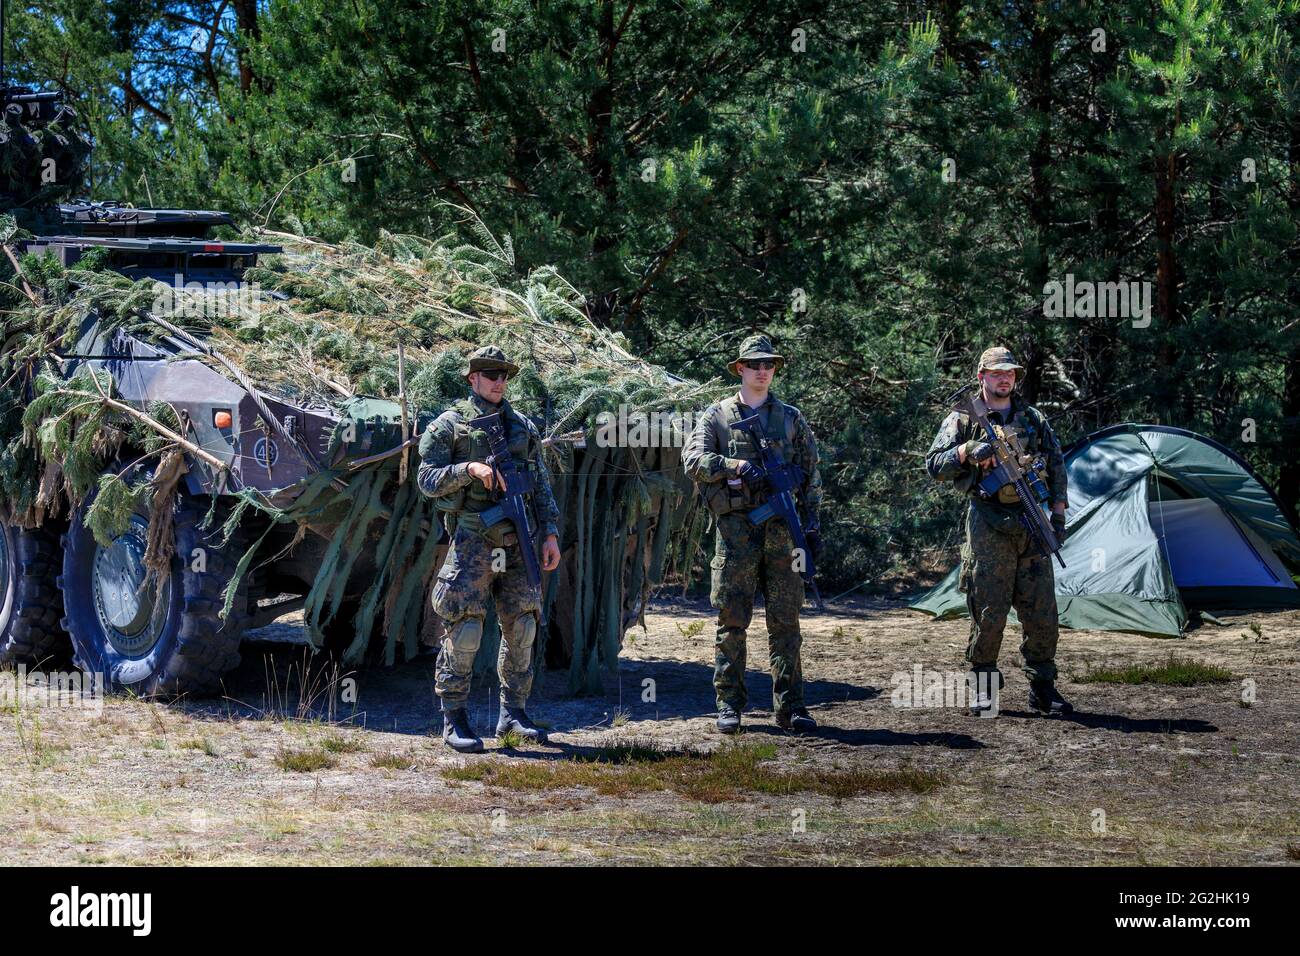 La logistica della base delle forze armate sostiene la forza di reazione rapida della NATO (VJTF) nell'area di addestramento militare nell'alta Lusazia. Foto Stock